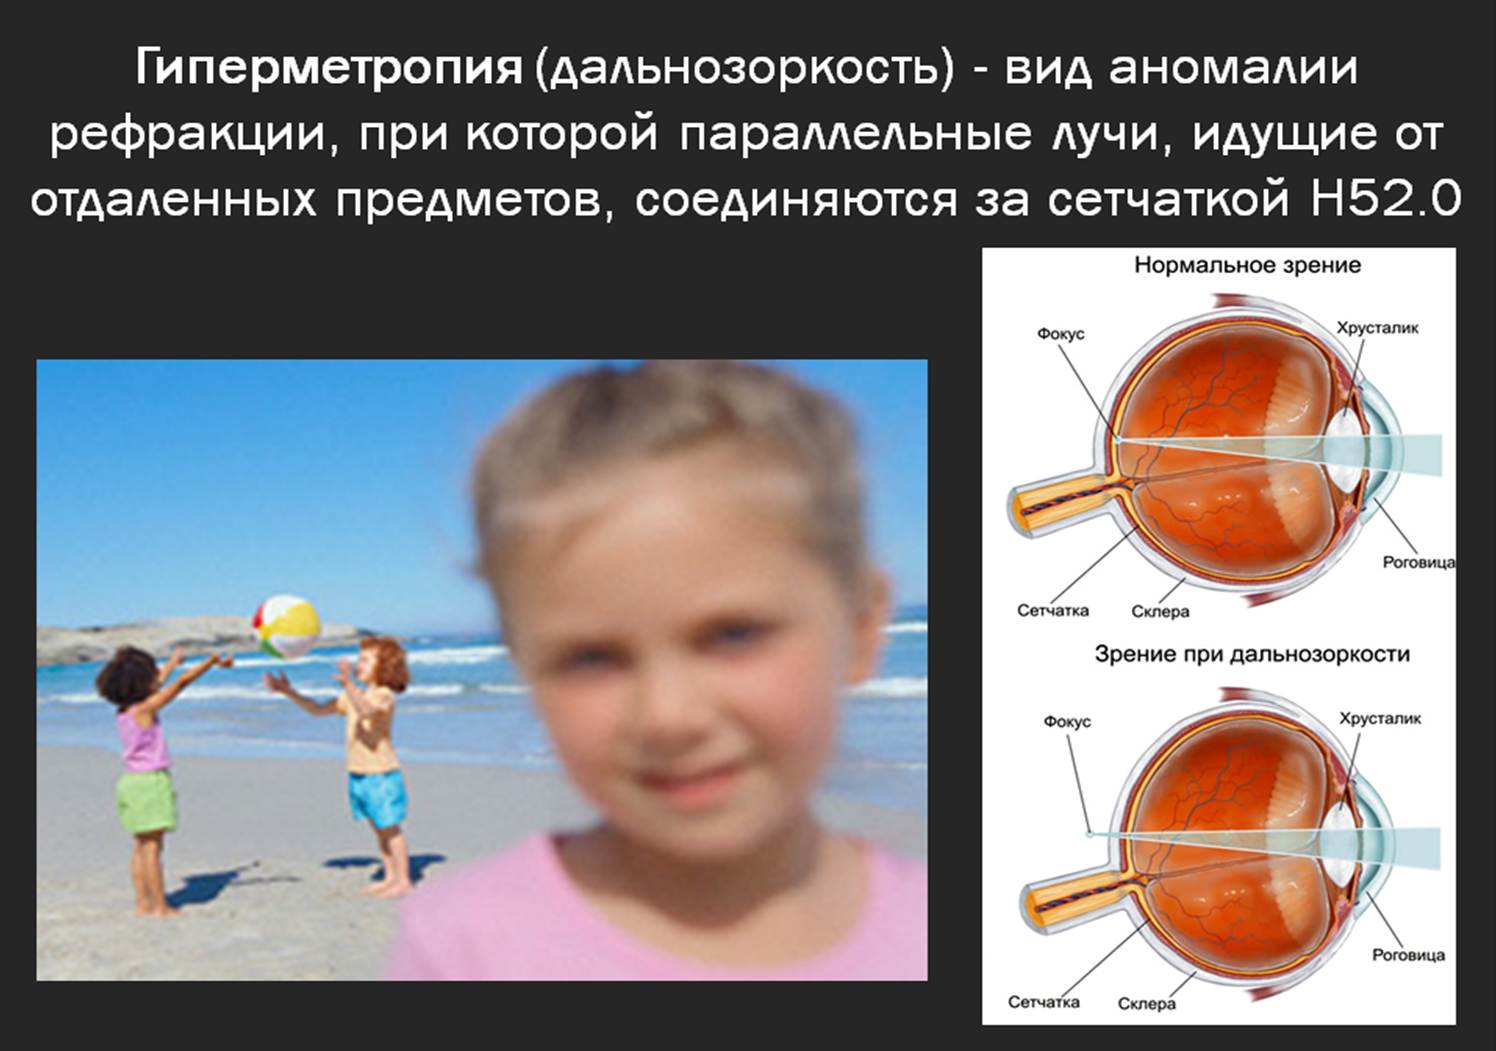 Недостатки дальнозоркости. Гиперметропия слабой степени ou у детей. Глаз гиперметропия высокой степени. Дальнозоркость слабой степени. Осложнения гиперметропии.